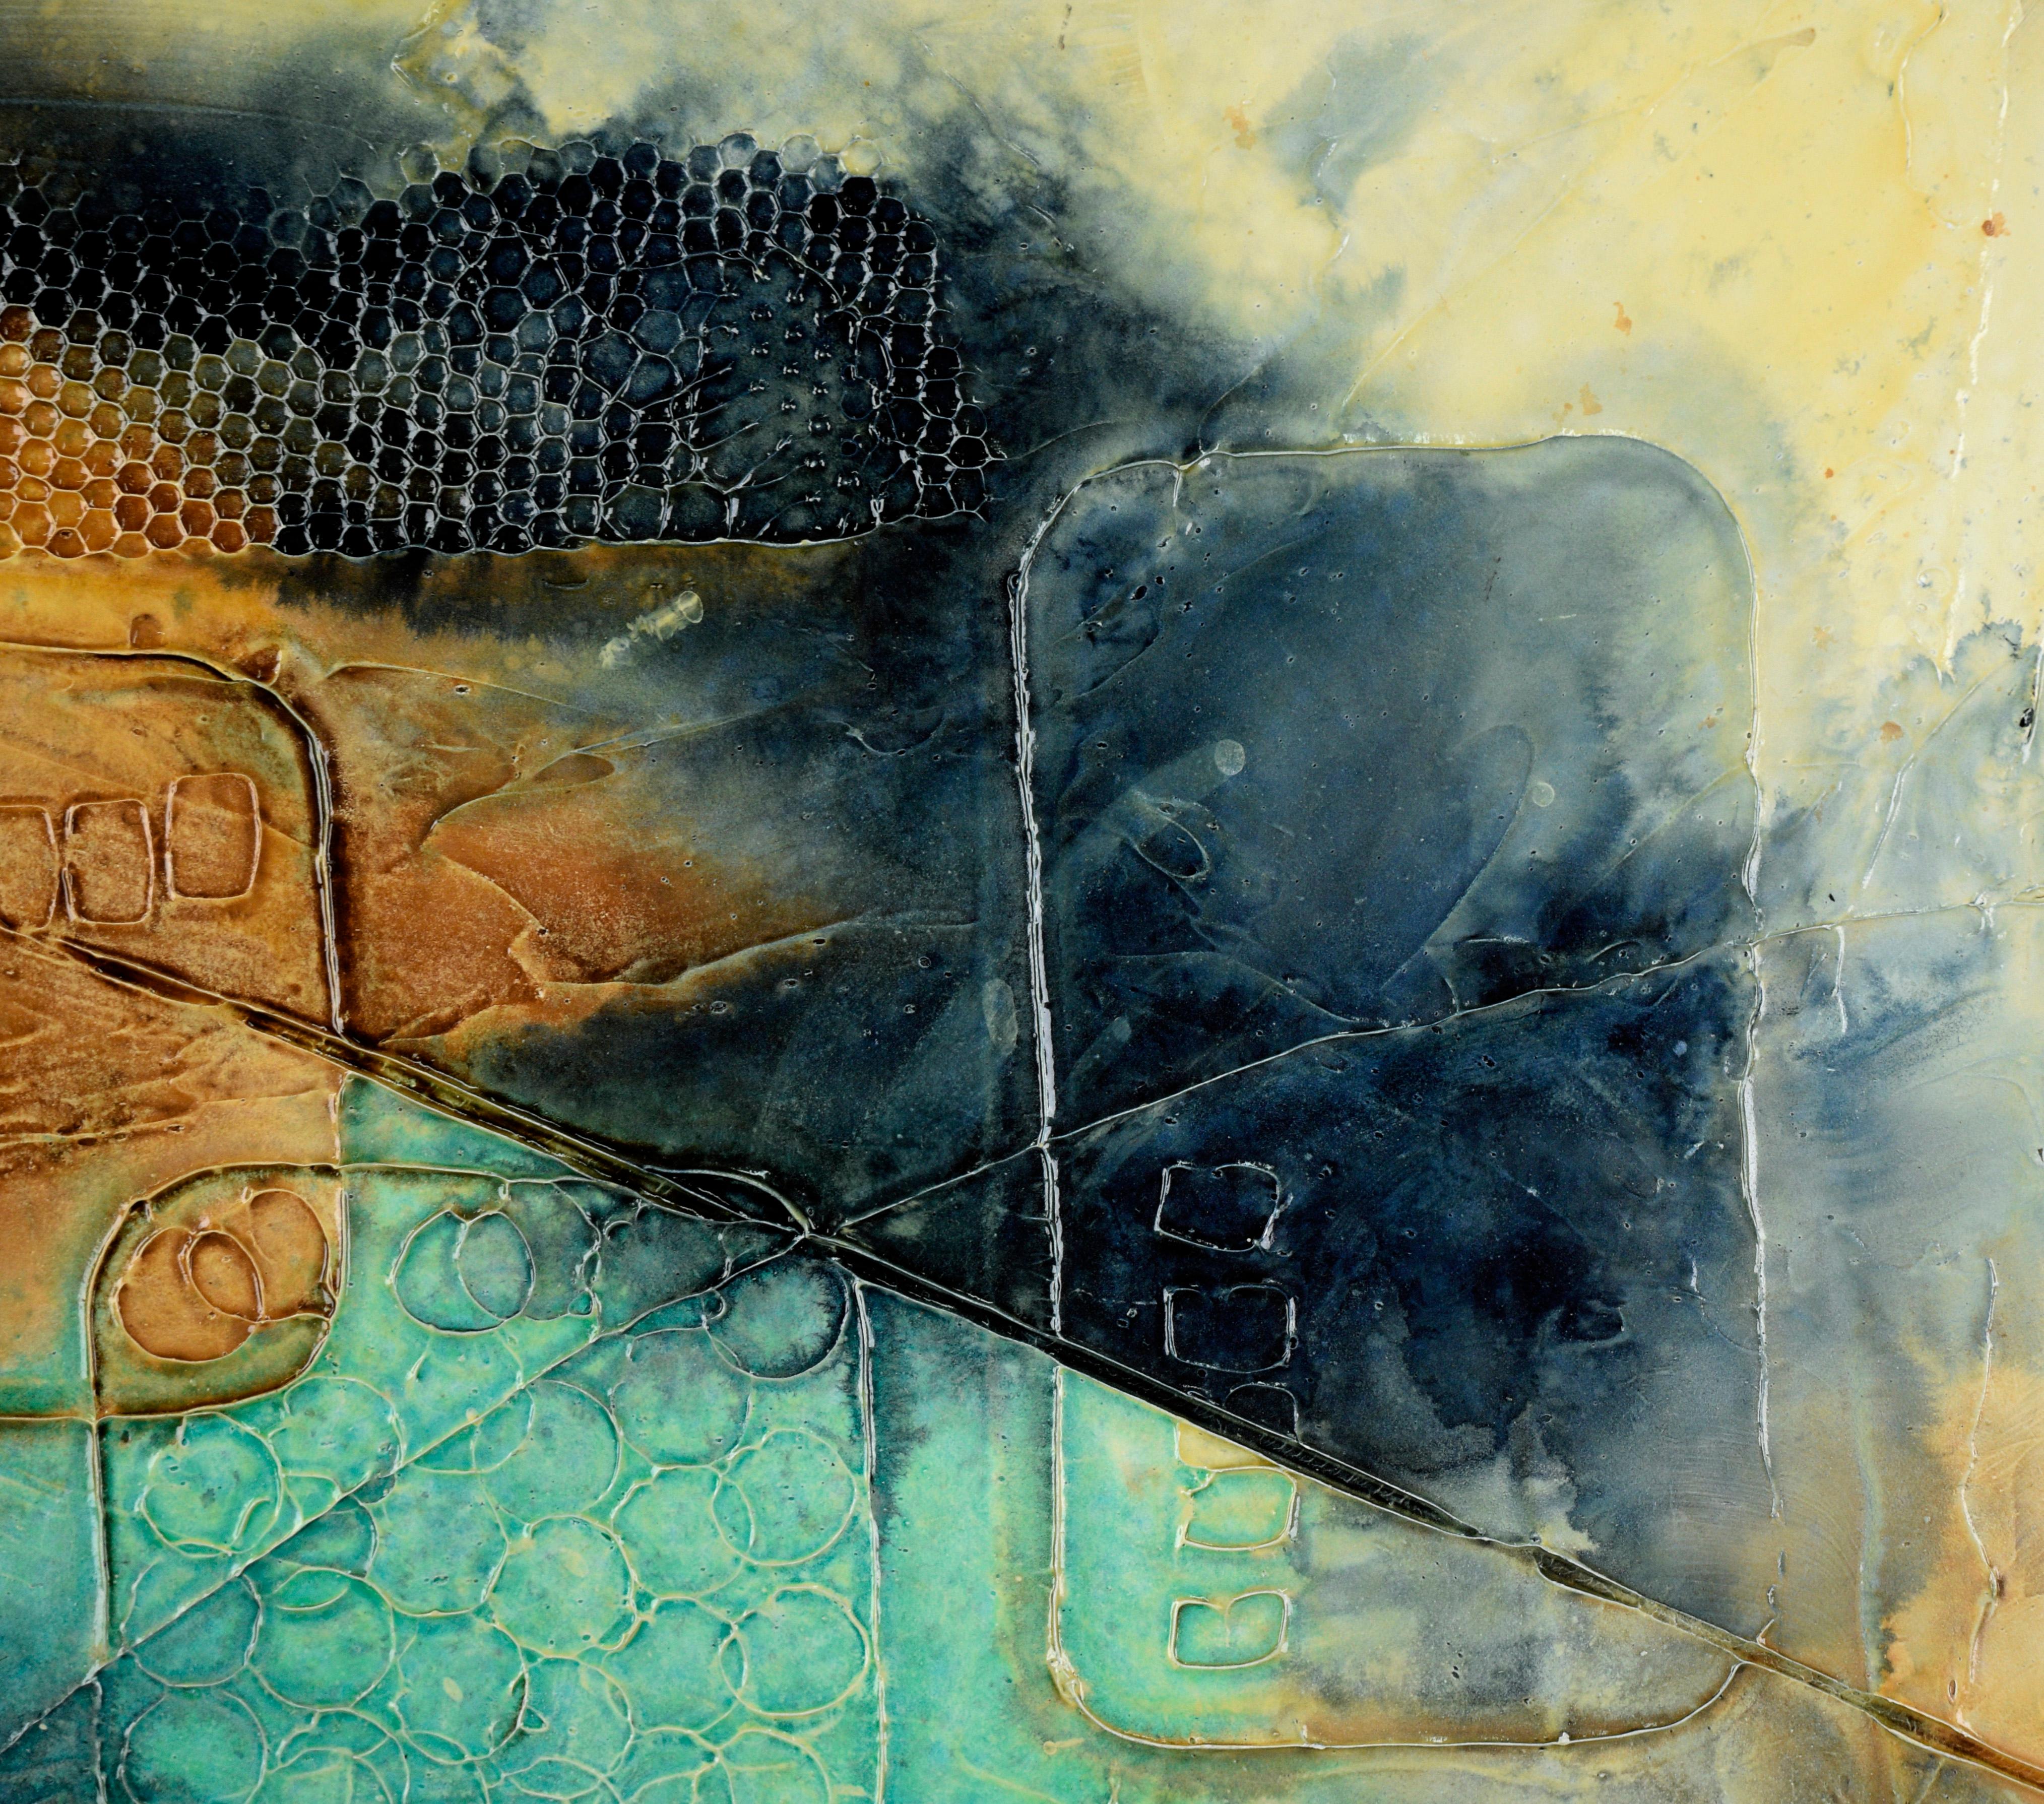 Texturierte abstrakte expressionistische Komposition in Acryl auf Karton

Strukturierte und detaillierte abstrakte Komposition von Loretta Burton Youngman (Amerikanerin, geb. 1943). Blaugrüne und anthrazitfarbene Flecken befinden sich auf einem